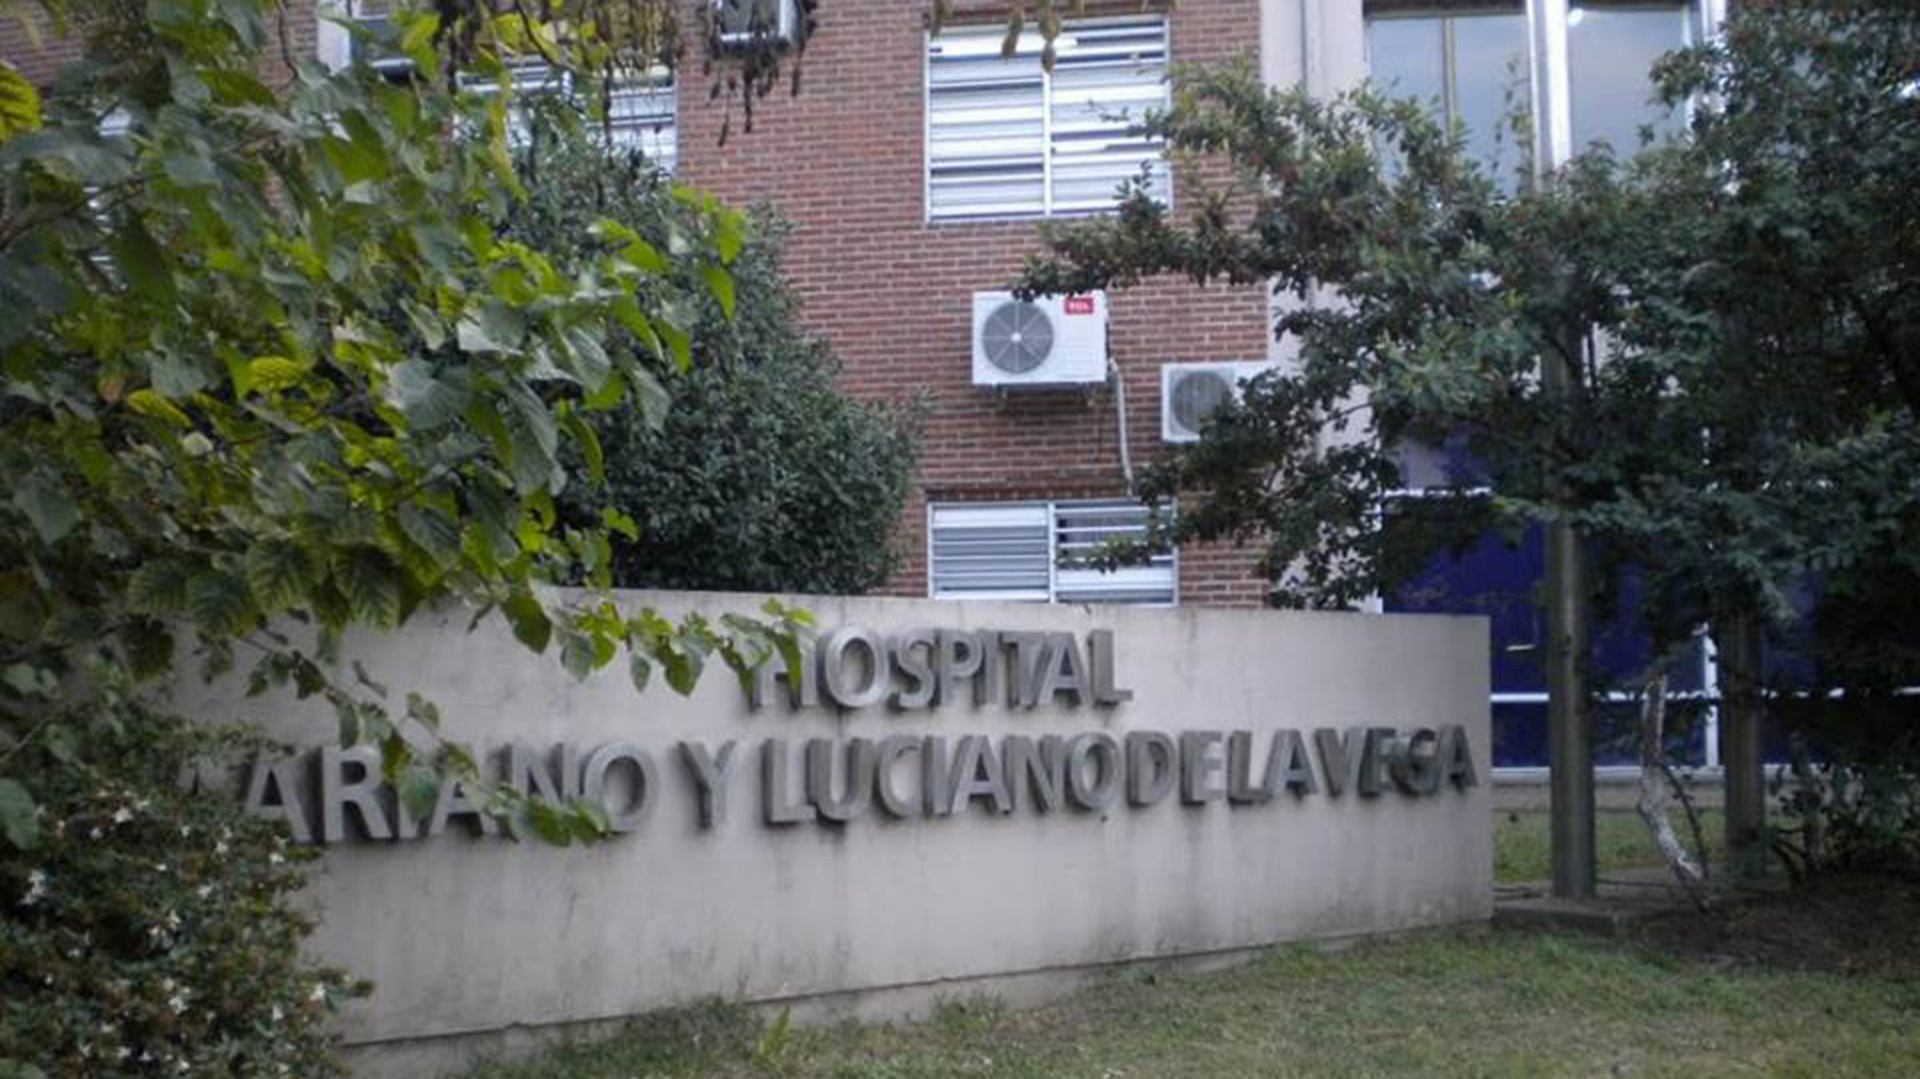 El médico generalista Emmanuel Álvarez ejerce como director del Hospital Descentralizado Zonal General “Mariano y Luciano de la Vega” de Moreno desde febrero de 2020